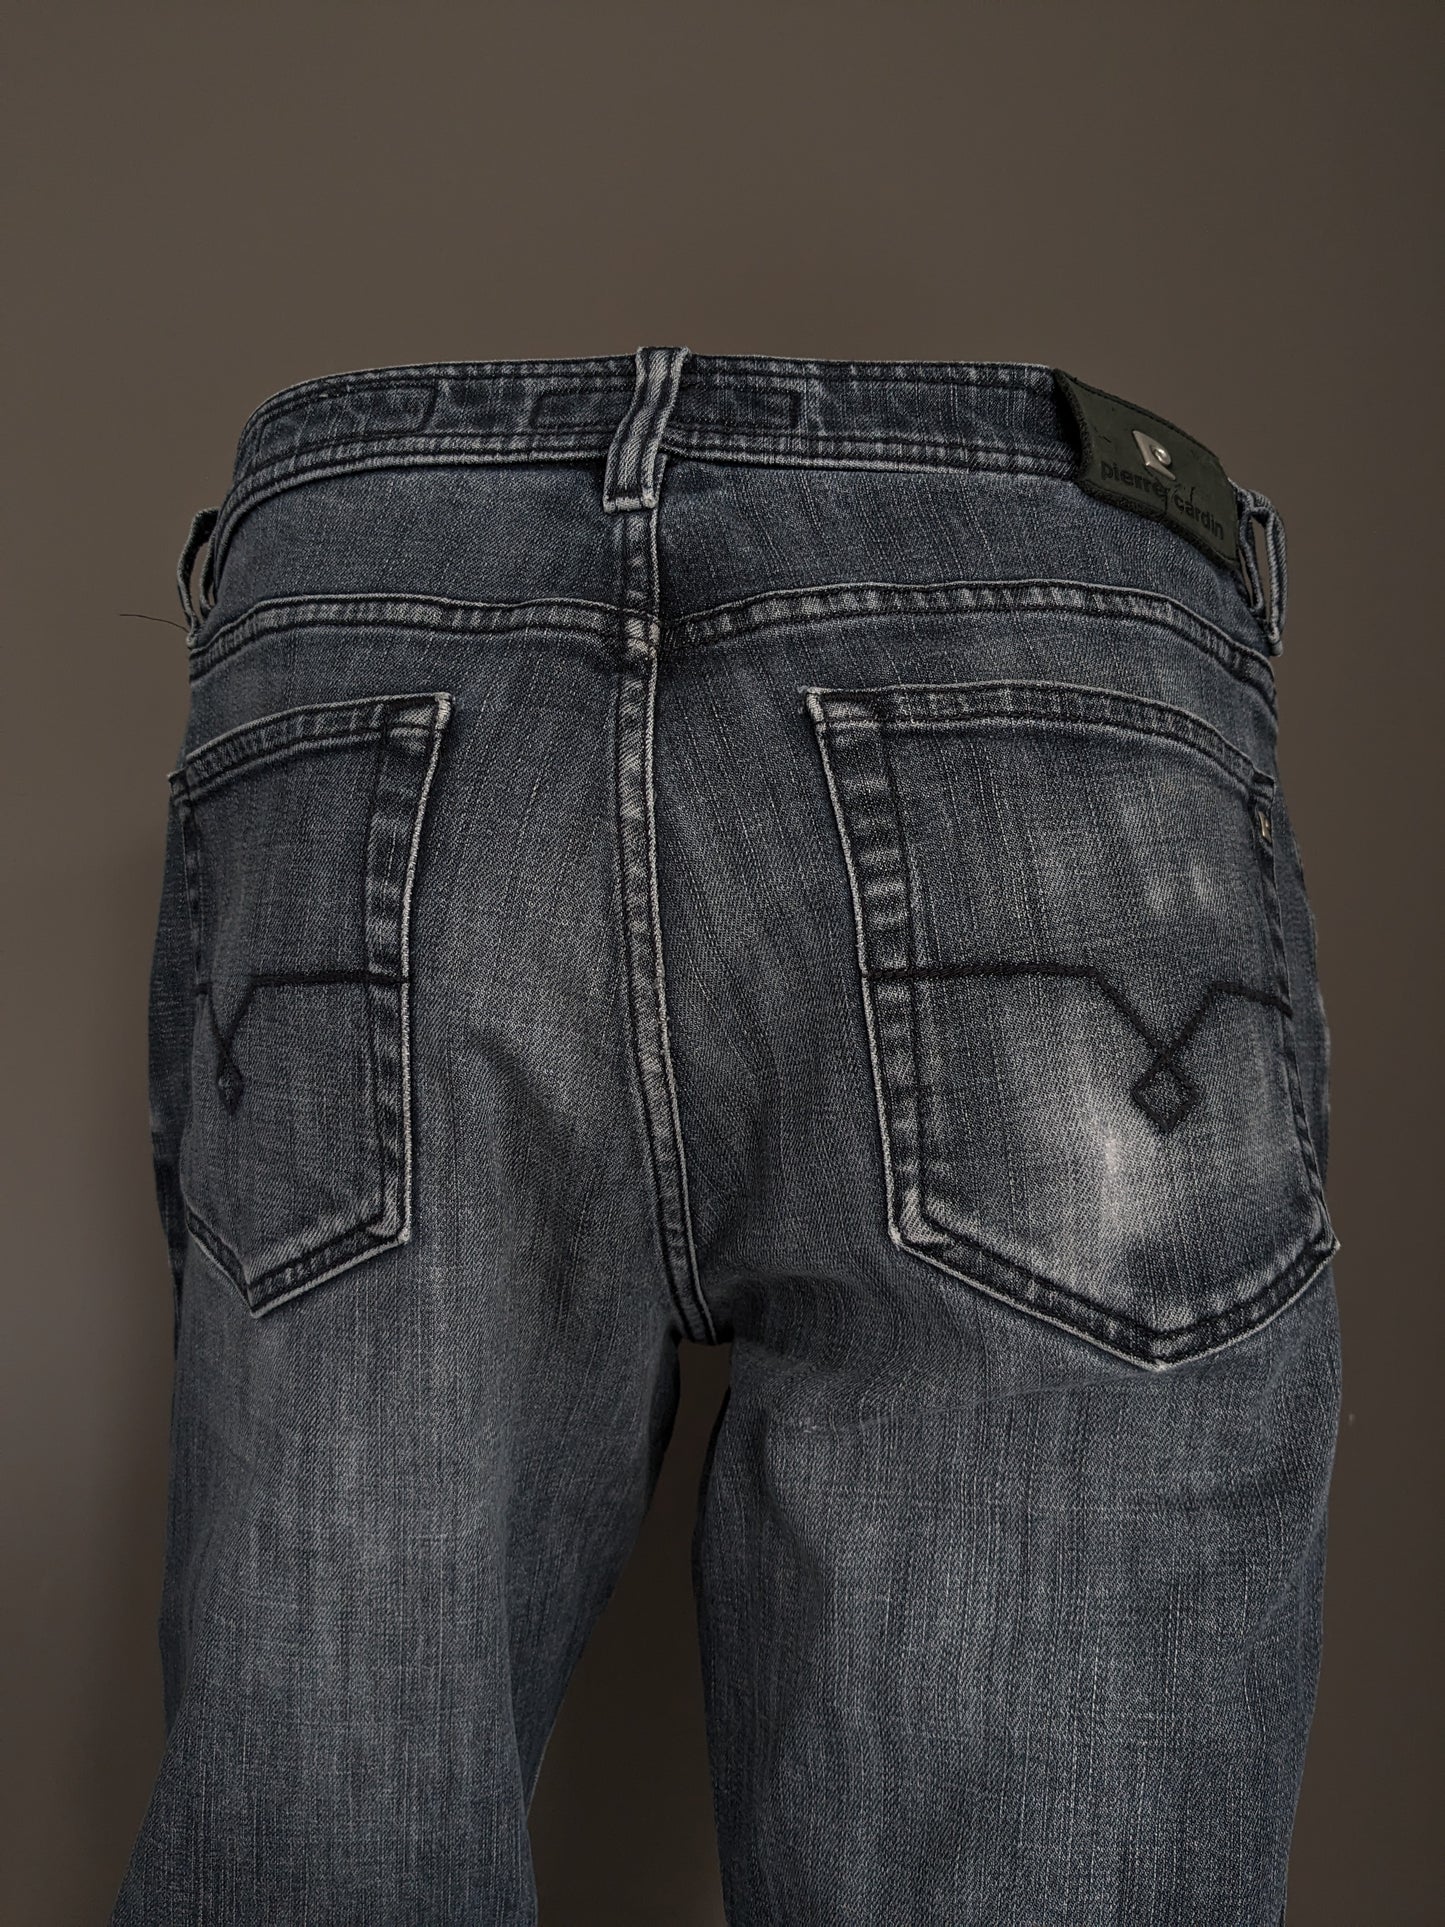 Pierre Cardin Jeans. Grigio nero colorato. Size W33 - L30. Tipo mod deauville.